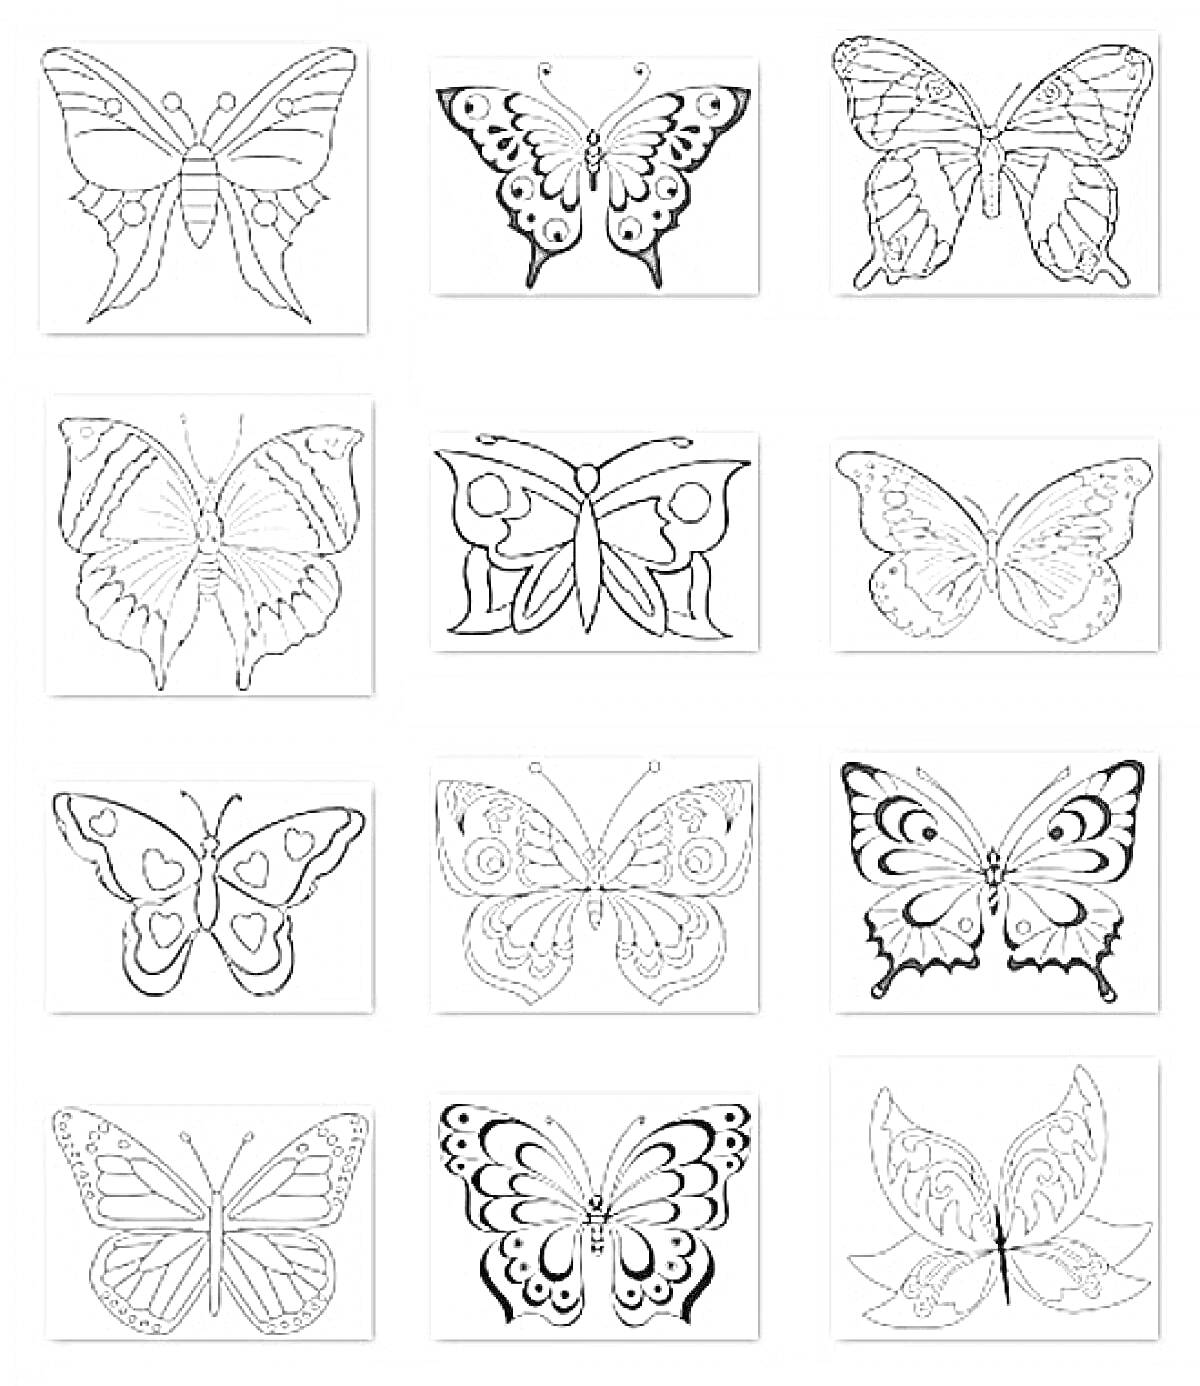 Раскраска Раскраски бабочек с разнообразными узорами и формами крыльев